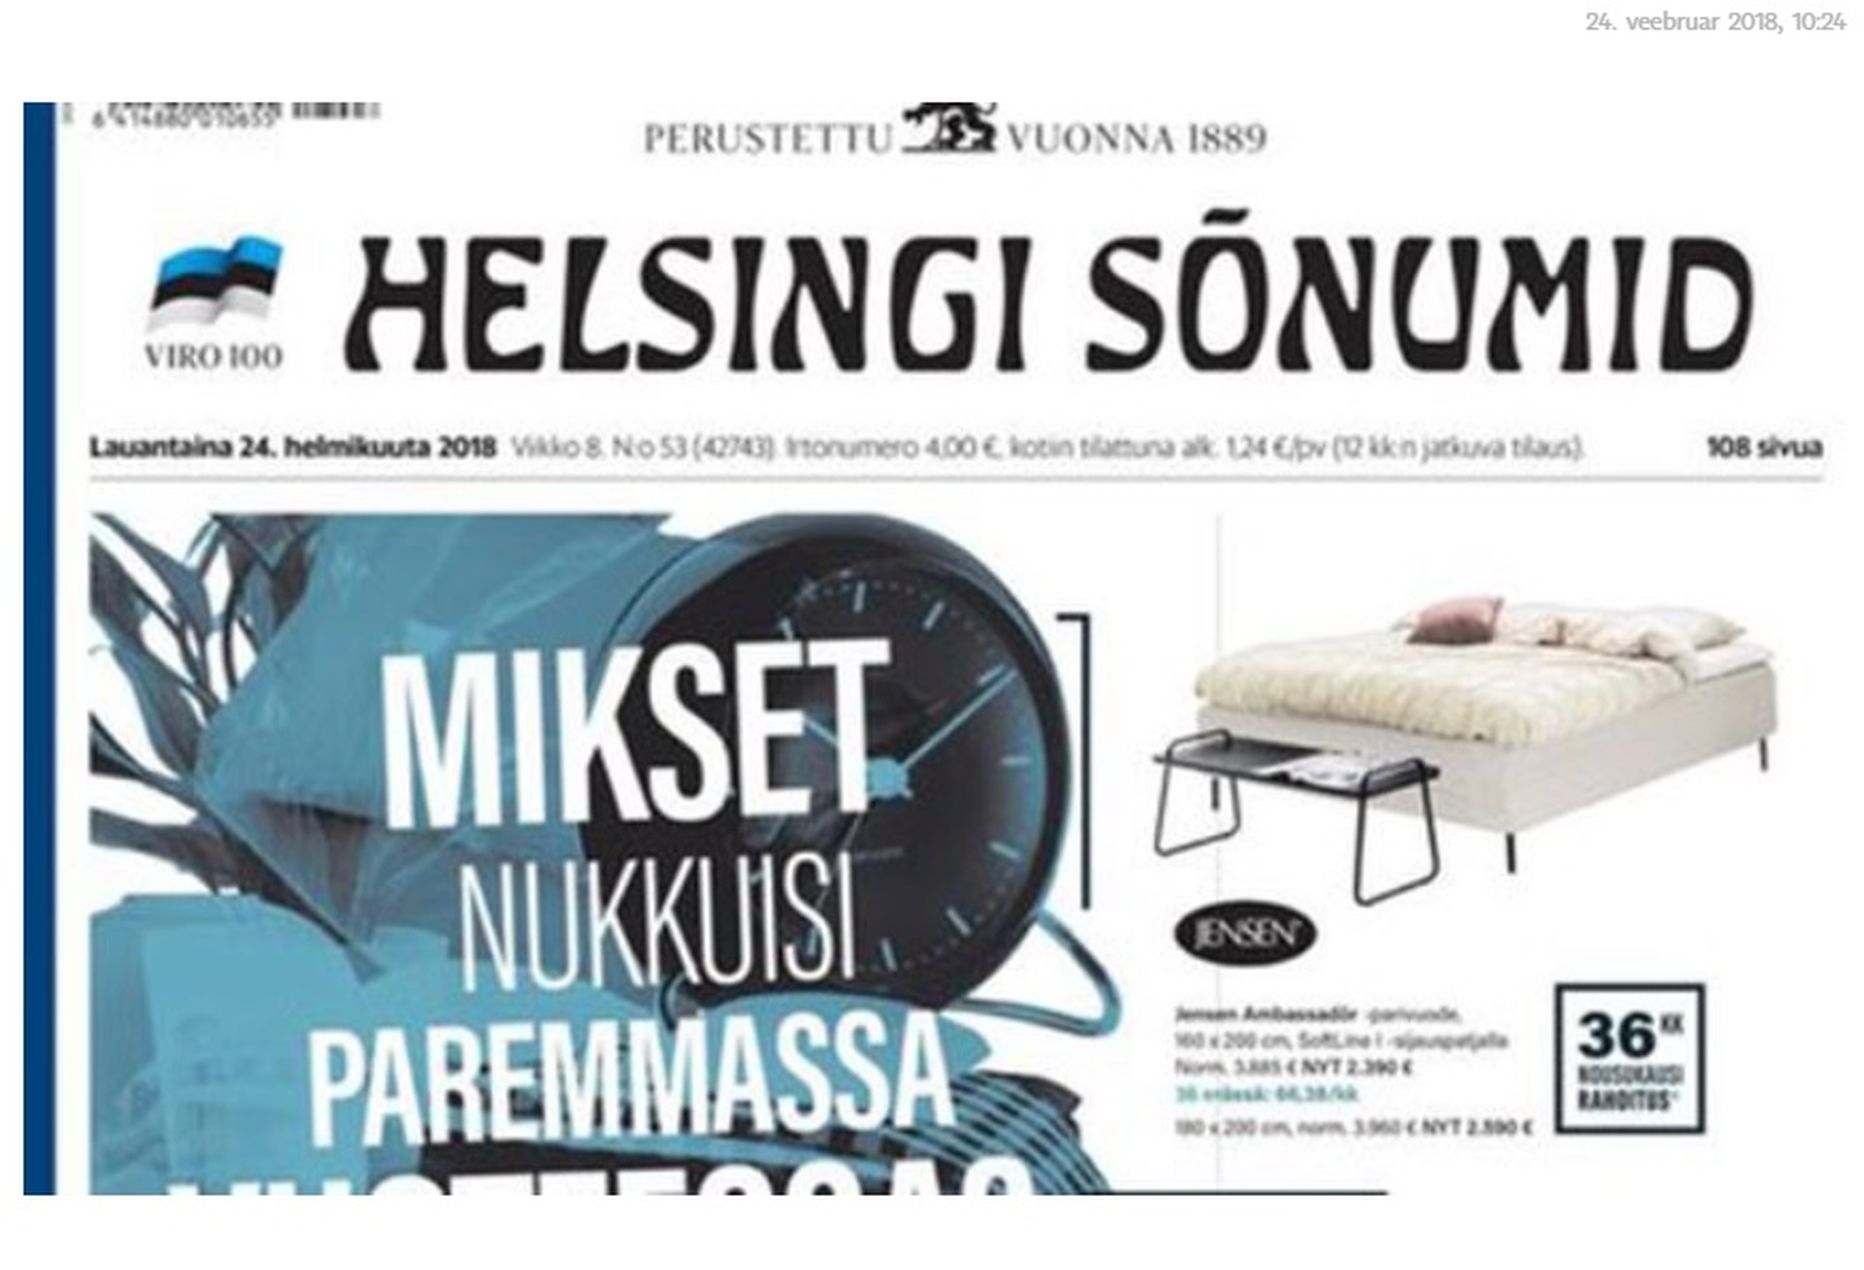 Ajalehe Helsingin Sanomat päises oli 24. veebruaril Helsingi Sõnumid.